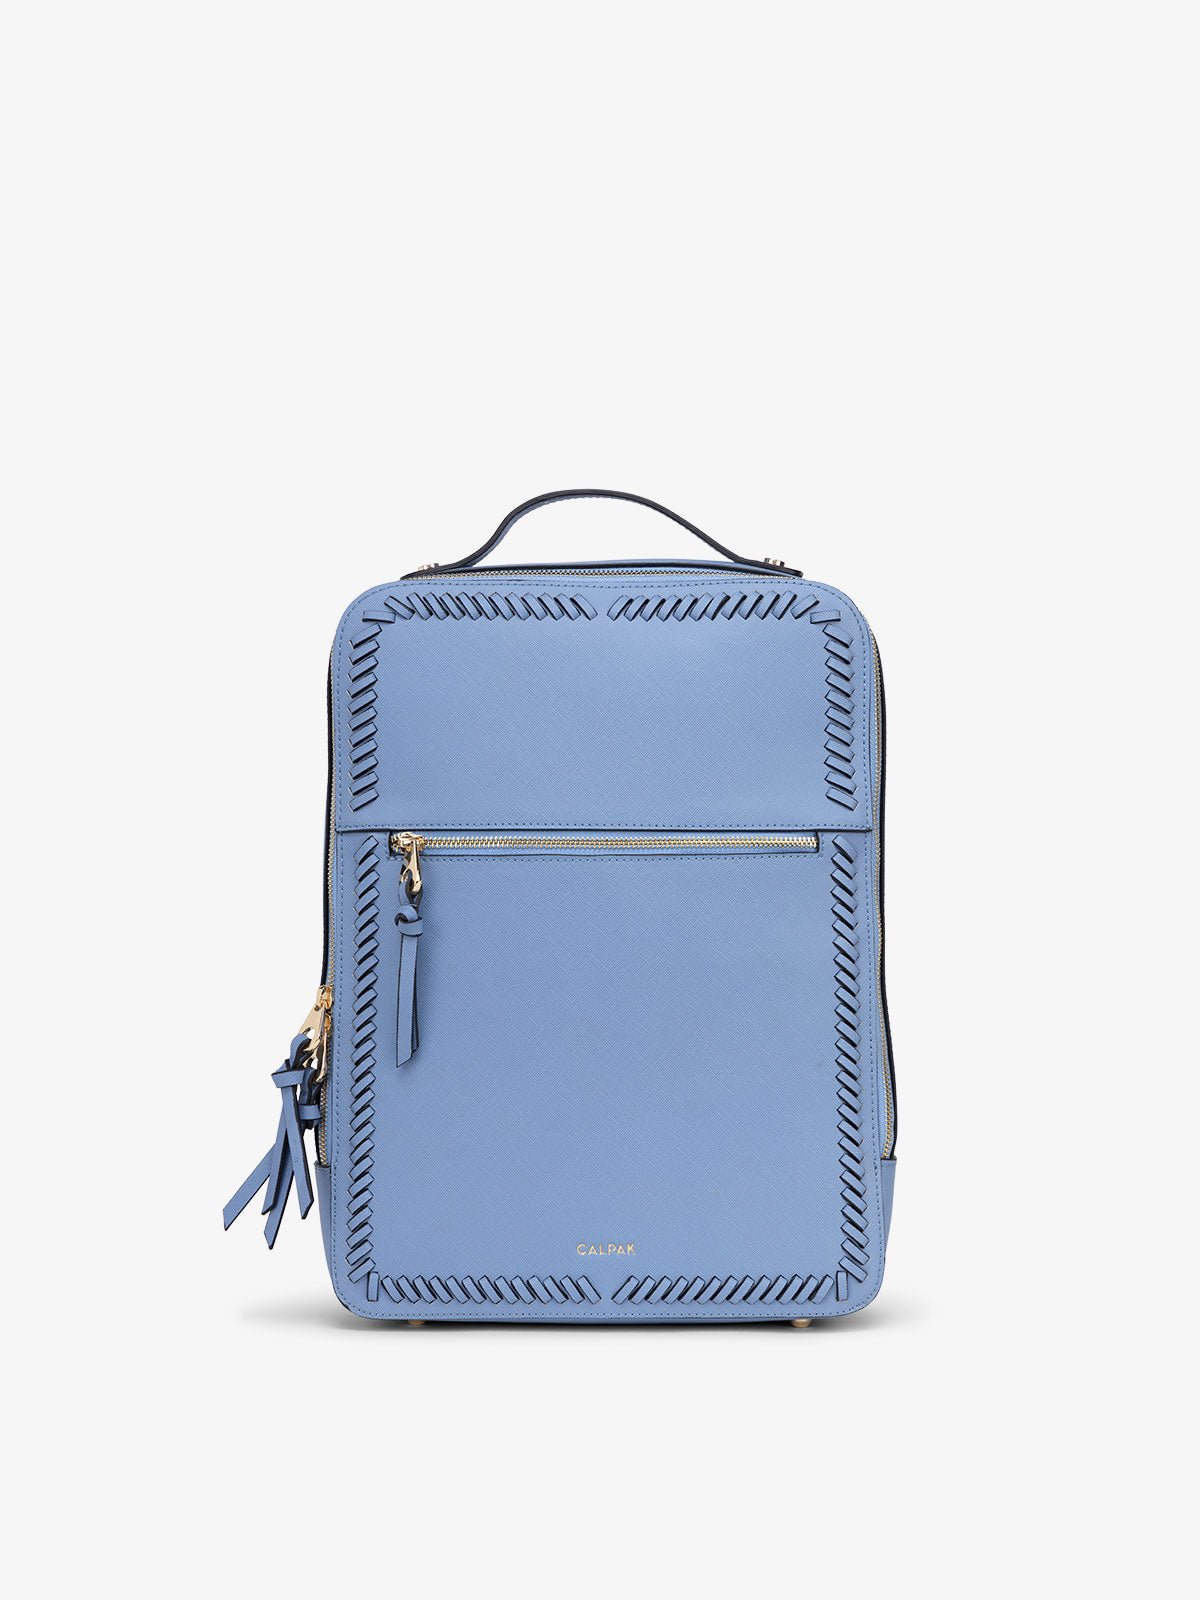 CALPAK Kaya laptop backpack in periwinkle blue